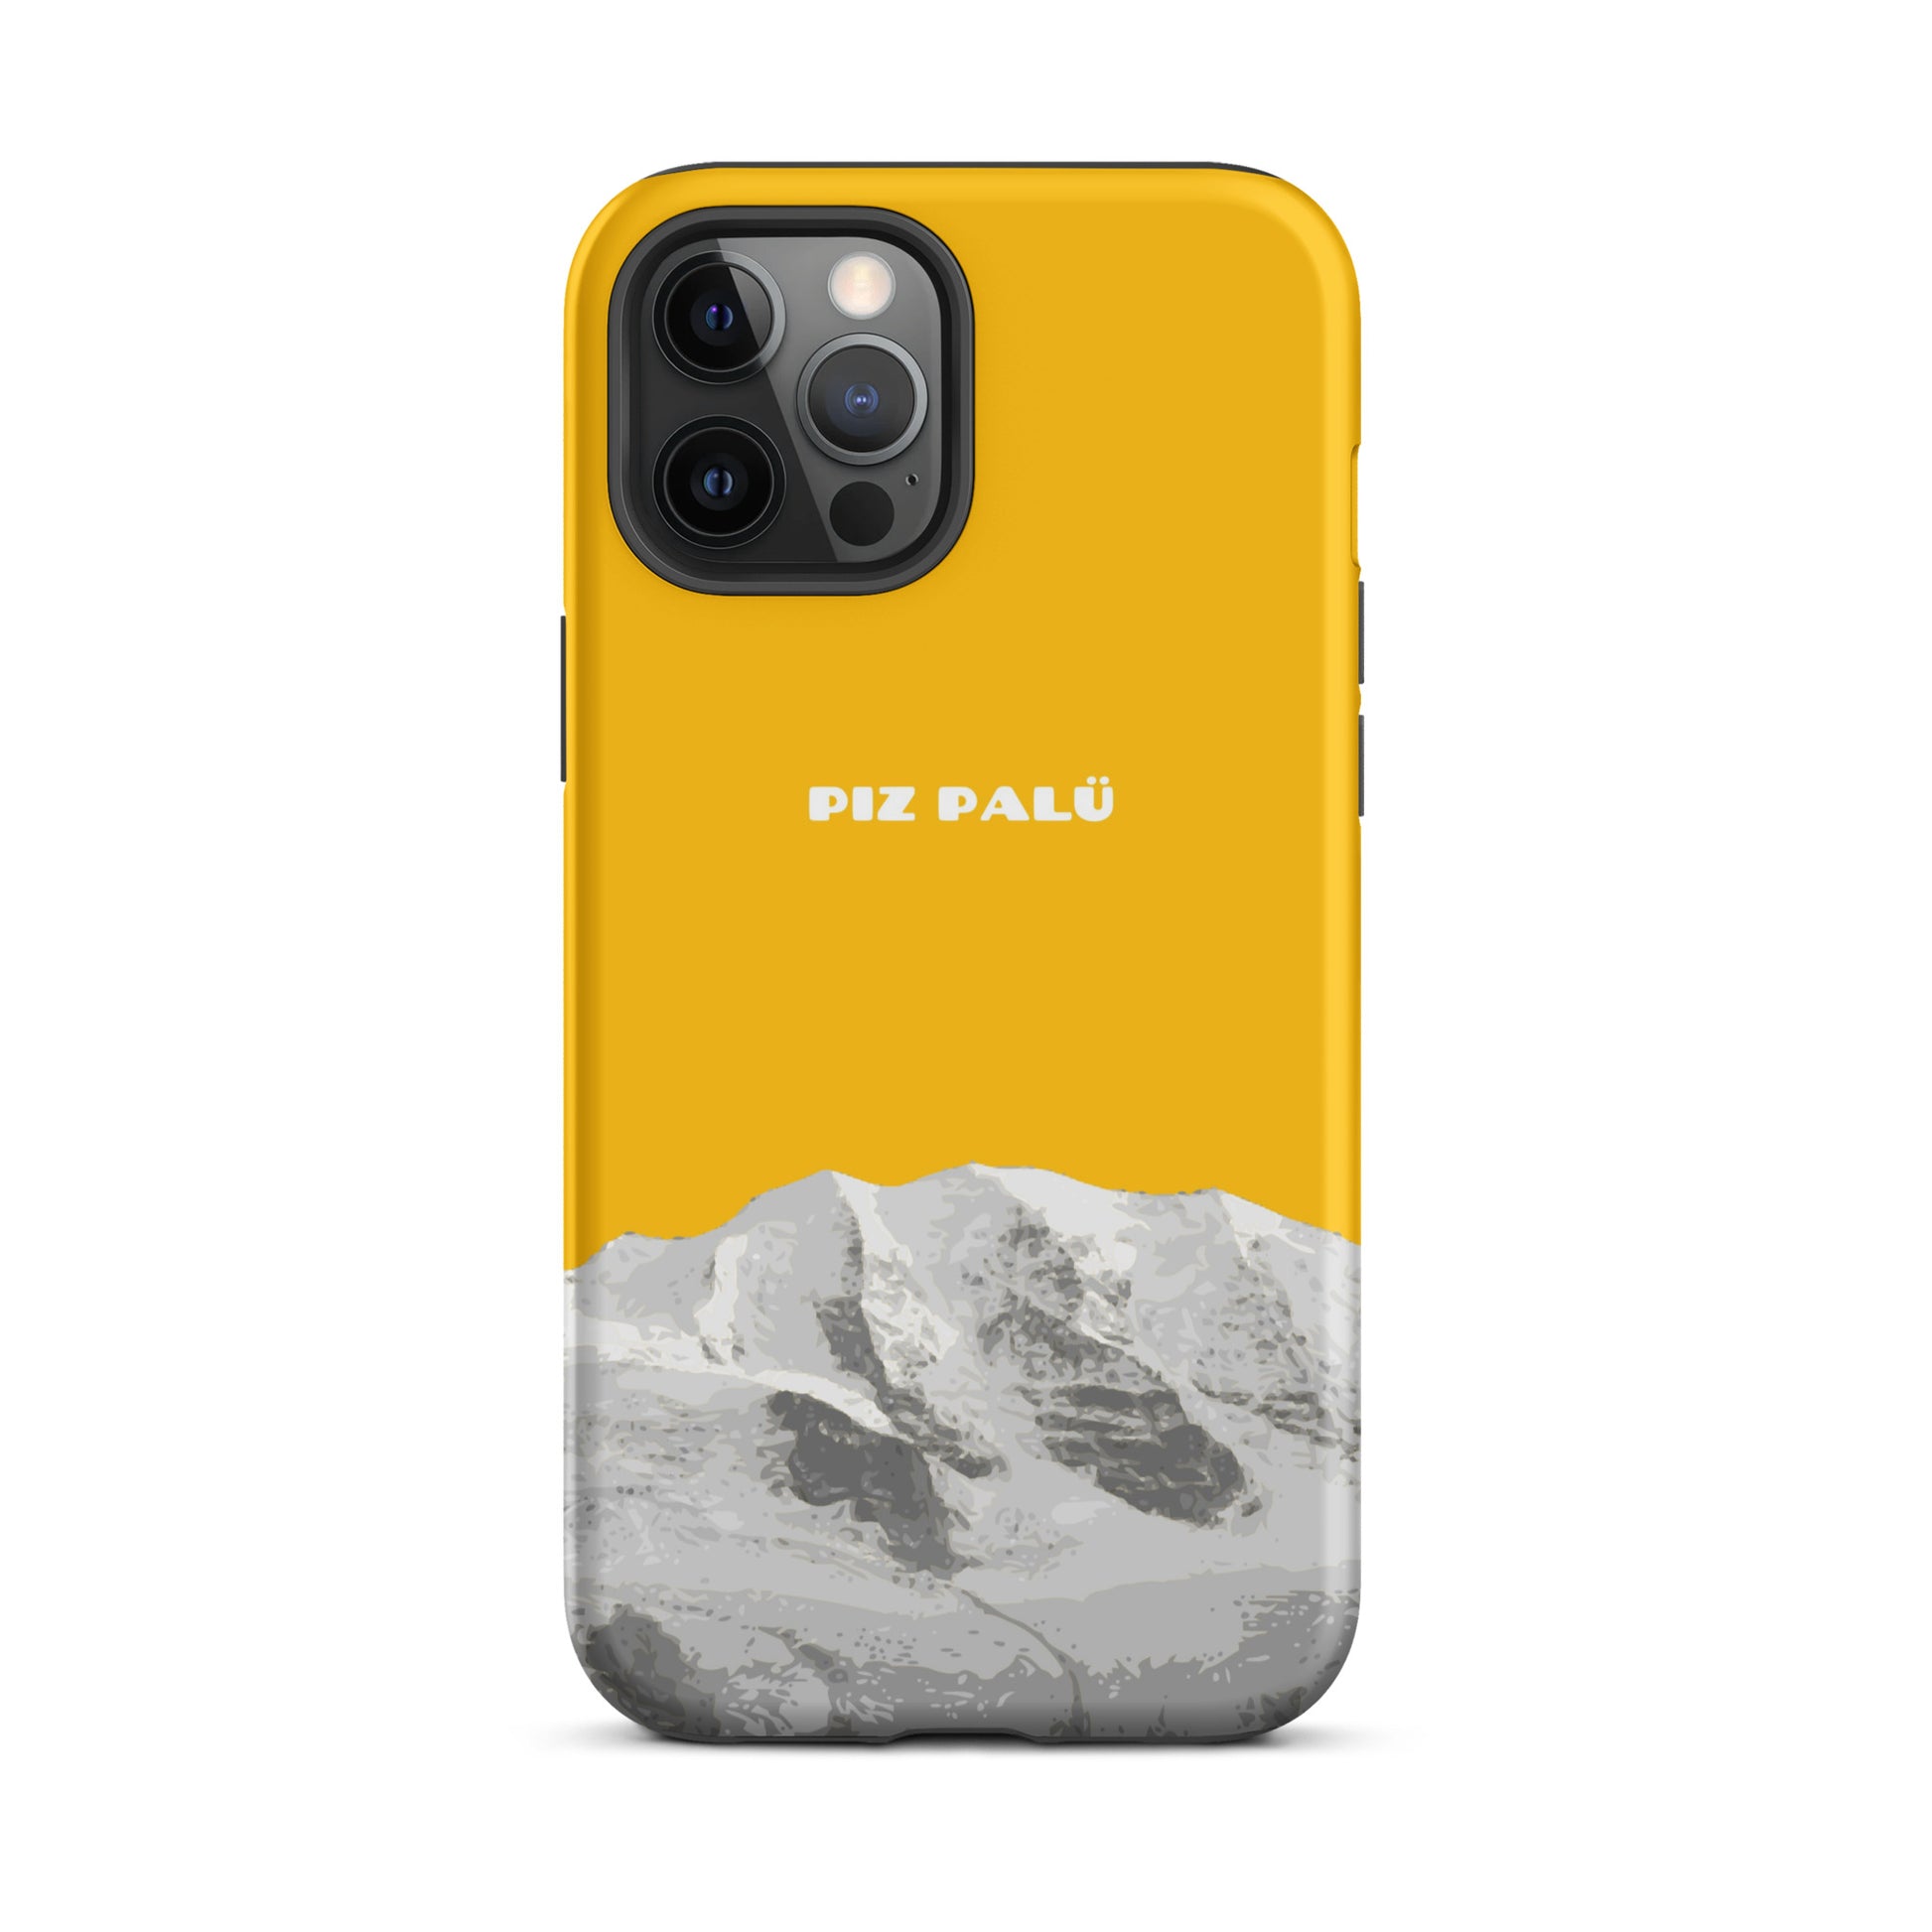 Hülle für das iPhone 12 Pro Max von Apple in der Farbe Goldgelb, dass den Piz Palü in Graubünden zeigt.